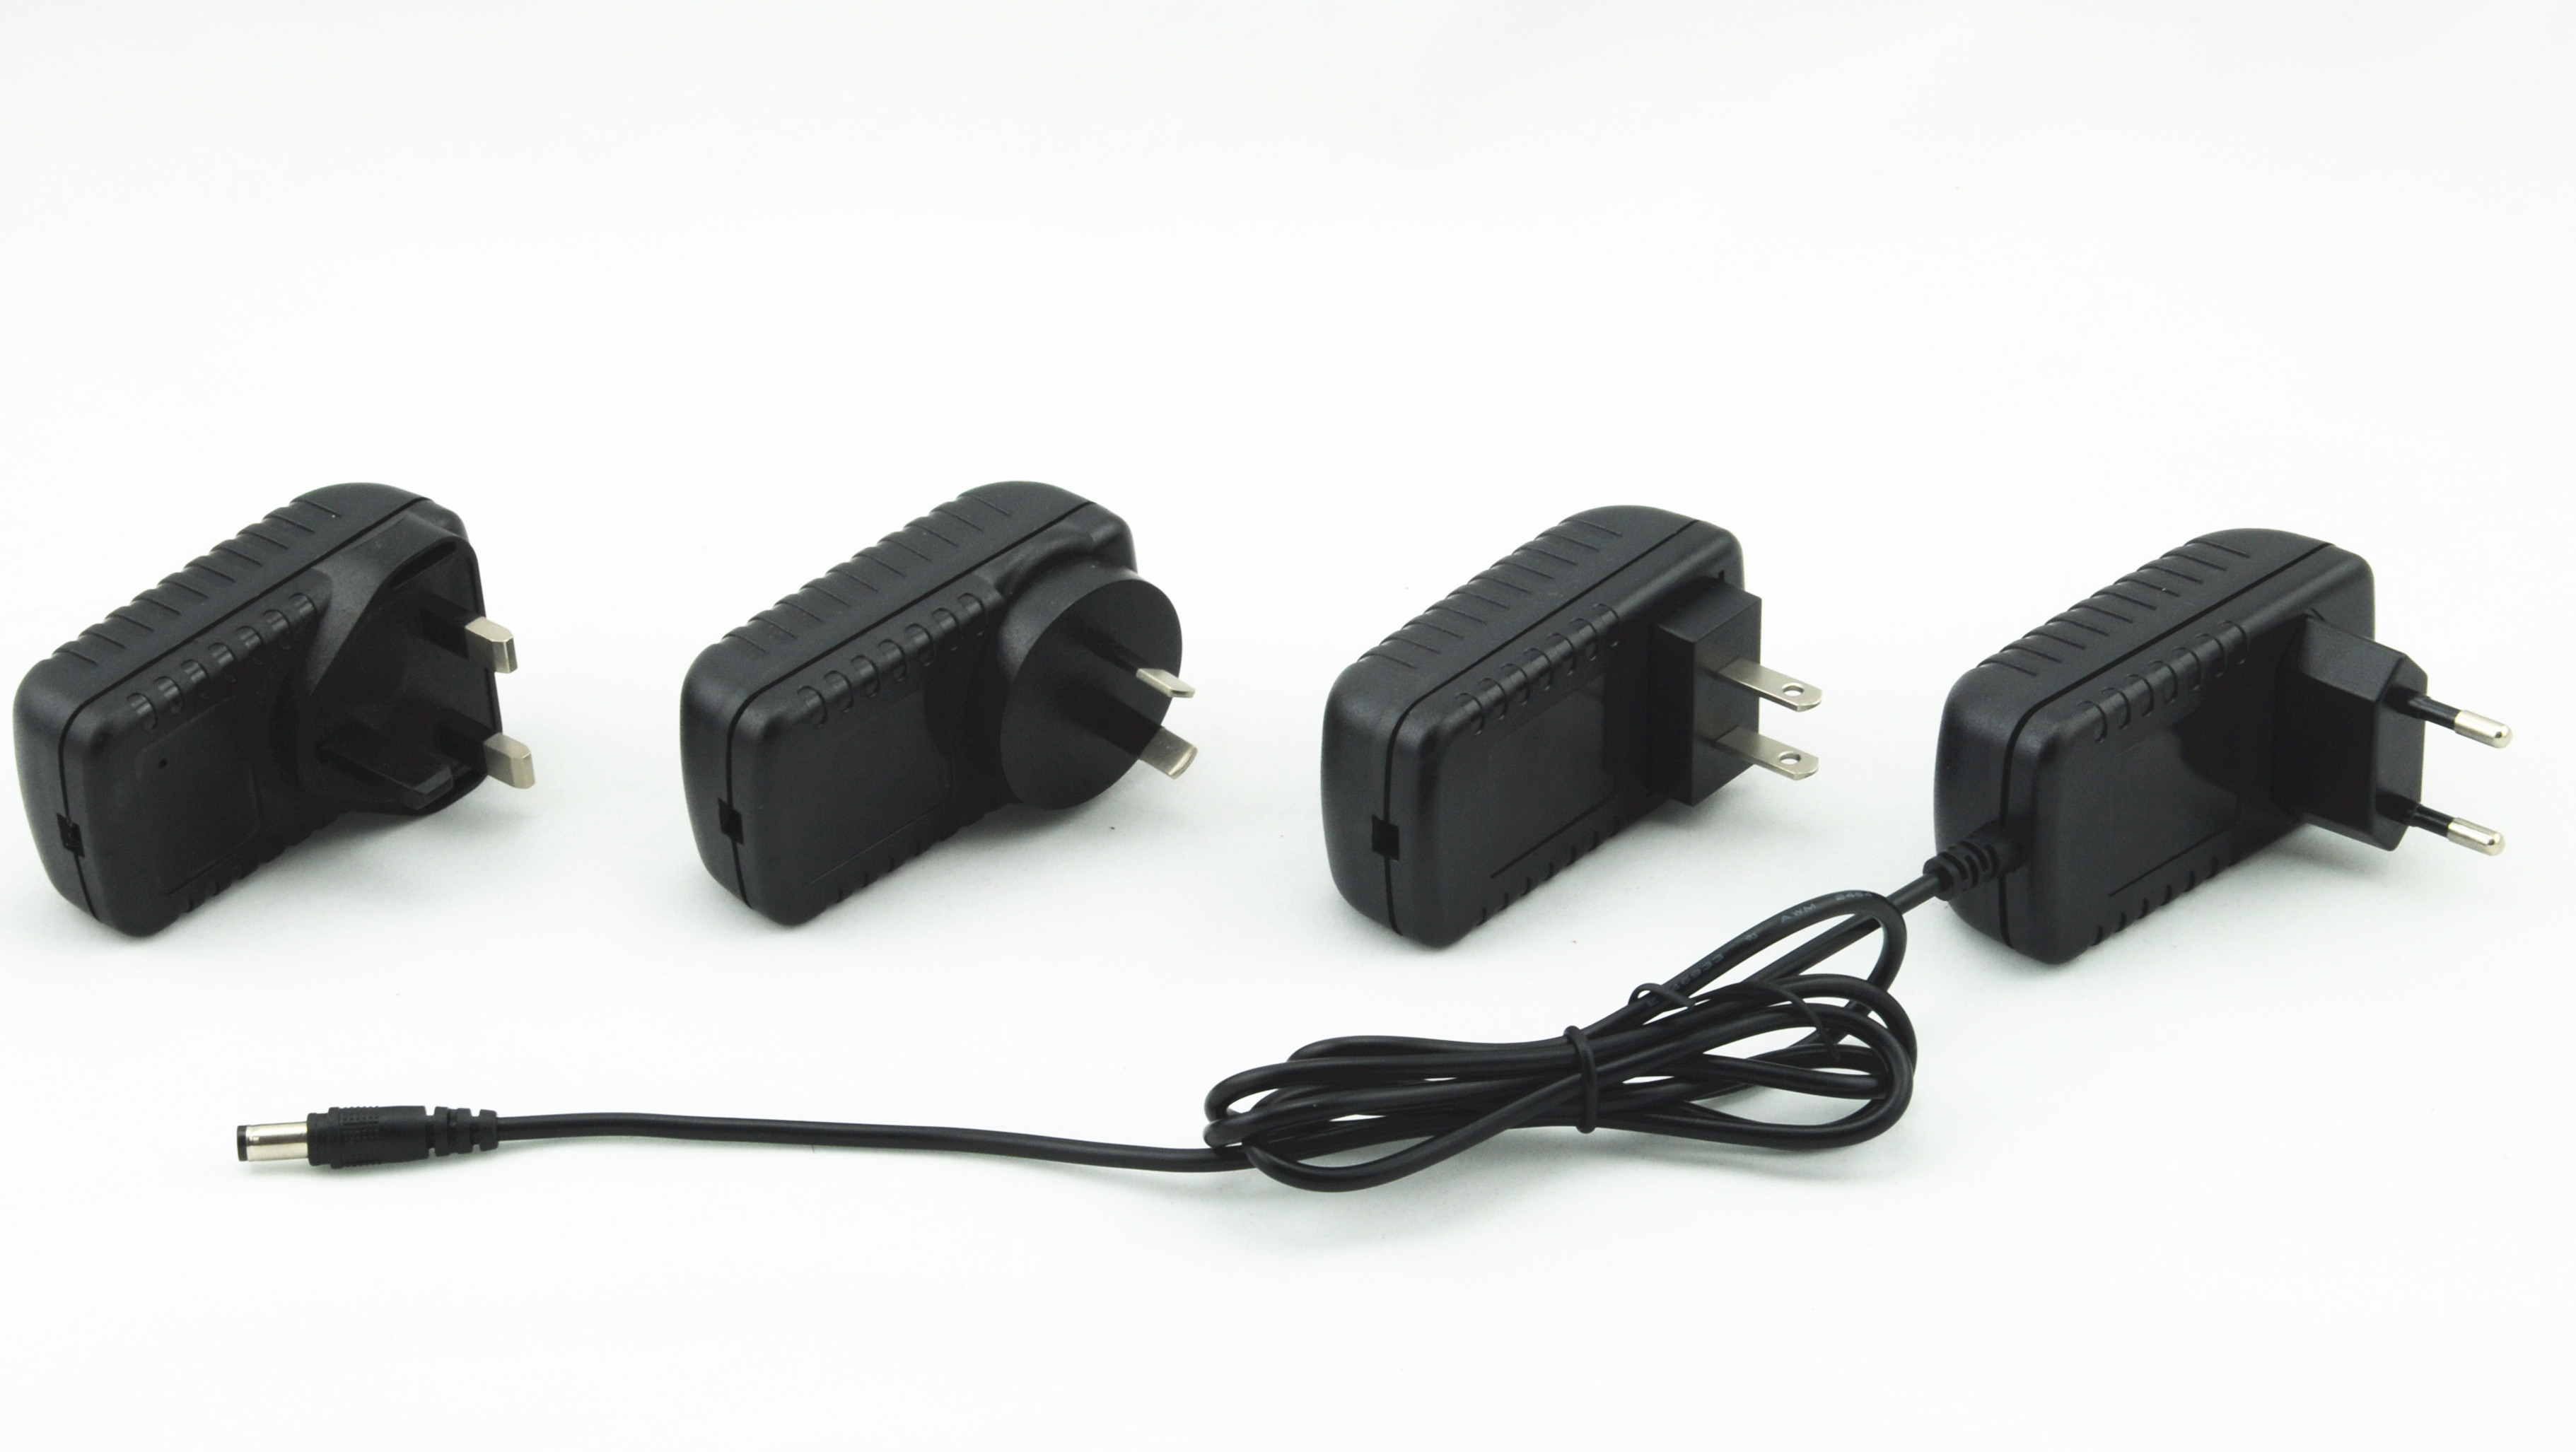 C.C 18W a produit des adaptateurs de courant alternatif Pour l'utilisation de machine de l'appareil photo numérique/position